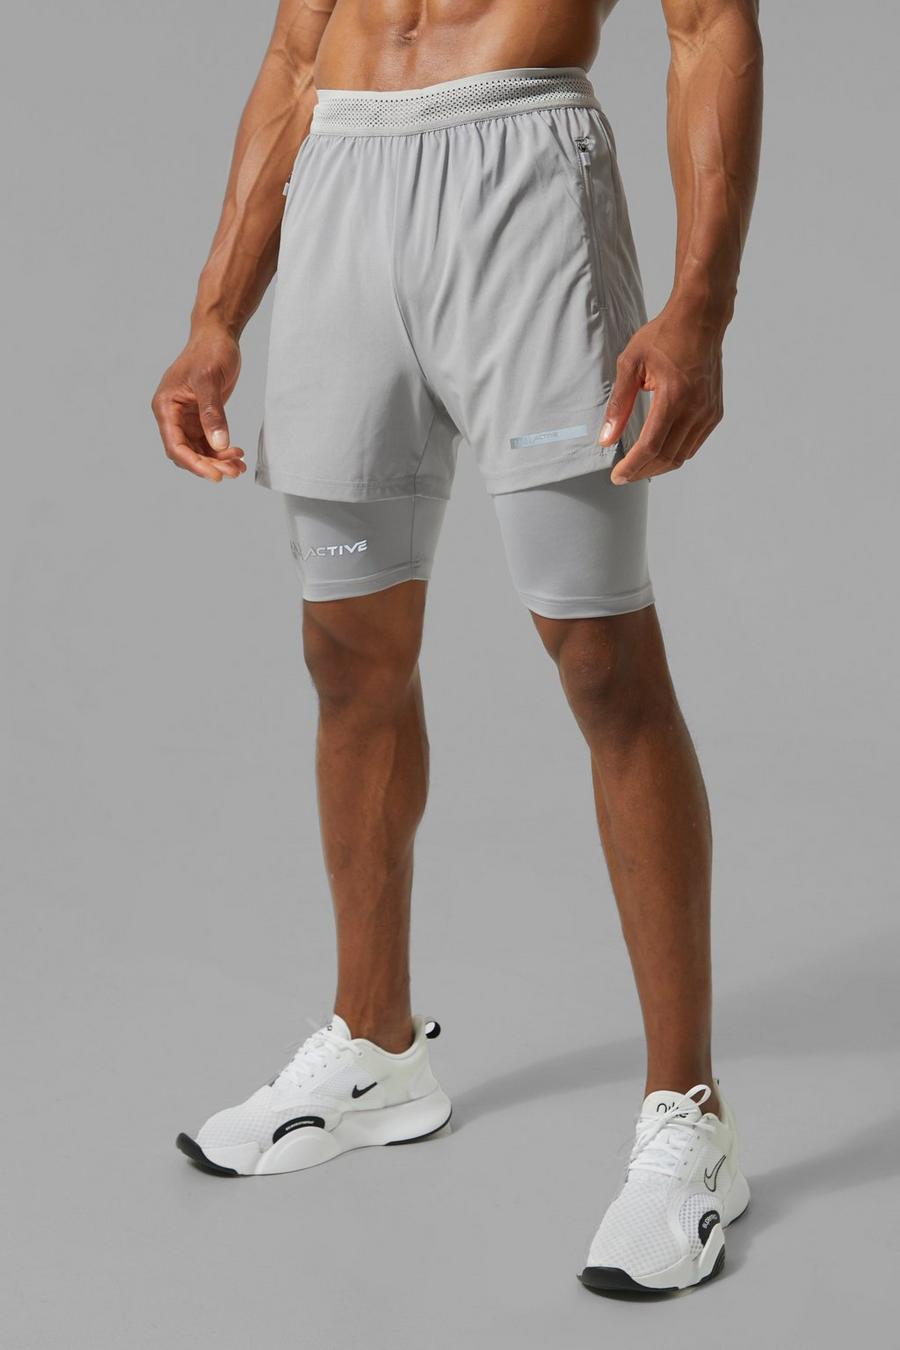 Pantaloncini Man Active 2 in 1 con stampa e spacco sul fondo, Grey image number 1